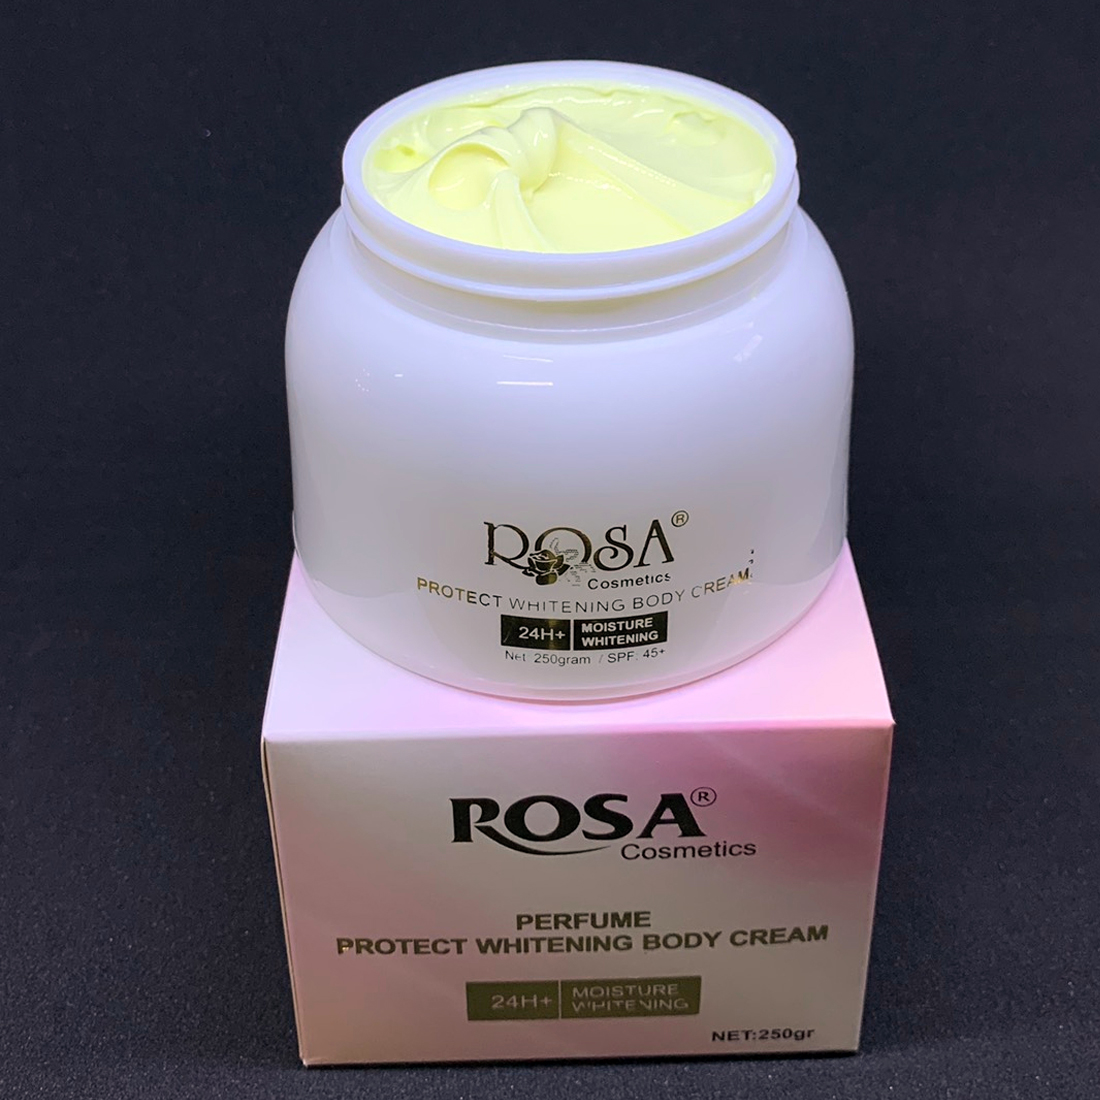 Kem mềm trắng da toàn thân hương nước hoa Rosa Perfume Protect Whitening Body Cream 250gr (kem trang điểm body, trắng nhanh ngay sau 7 ngày sử dụng) Hani Peni